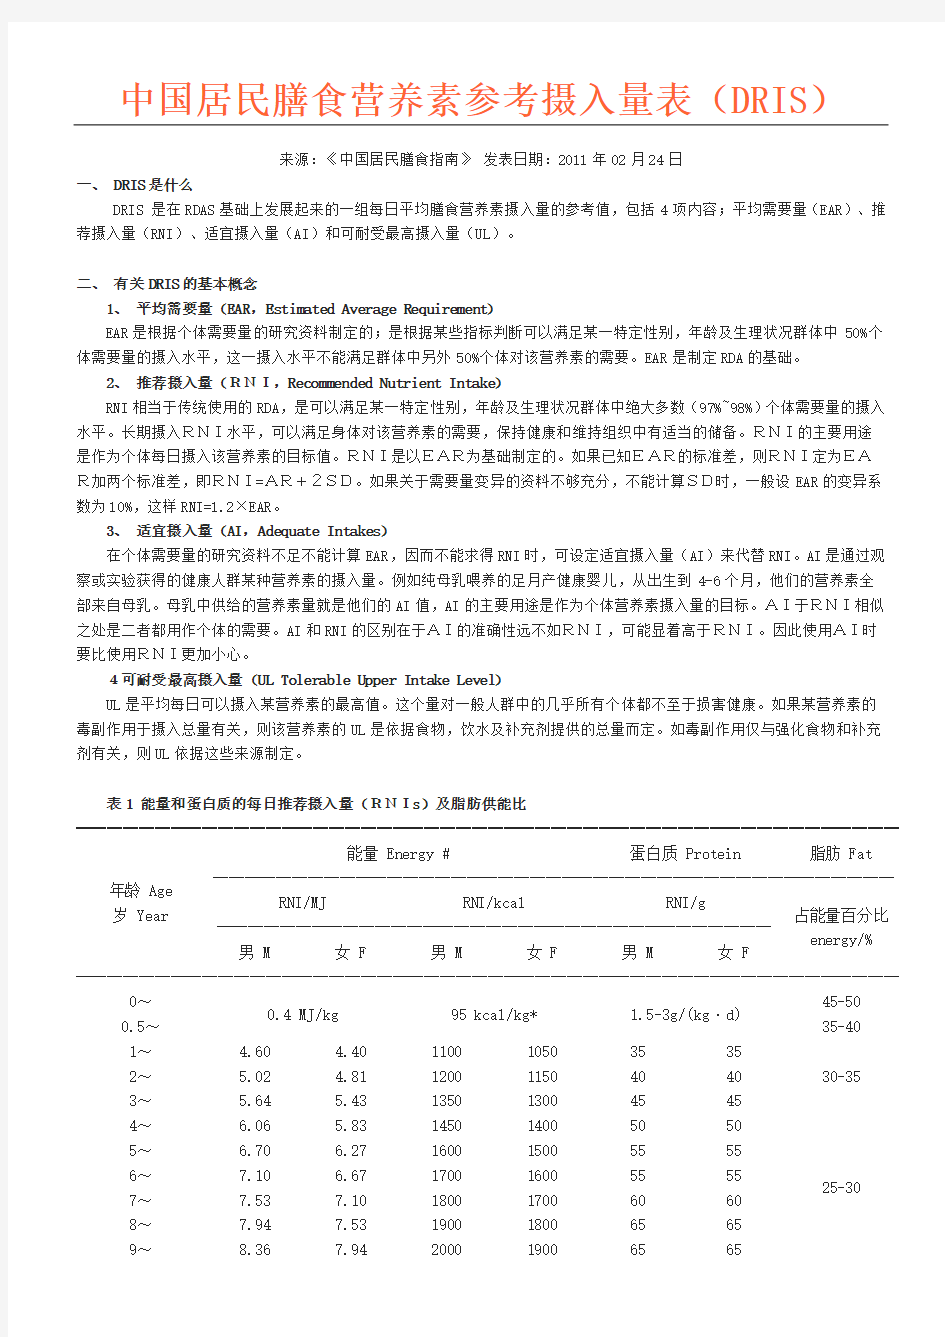 中国居民营养素摄入量参考准则